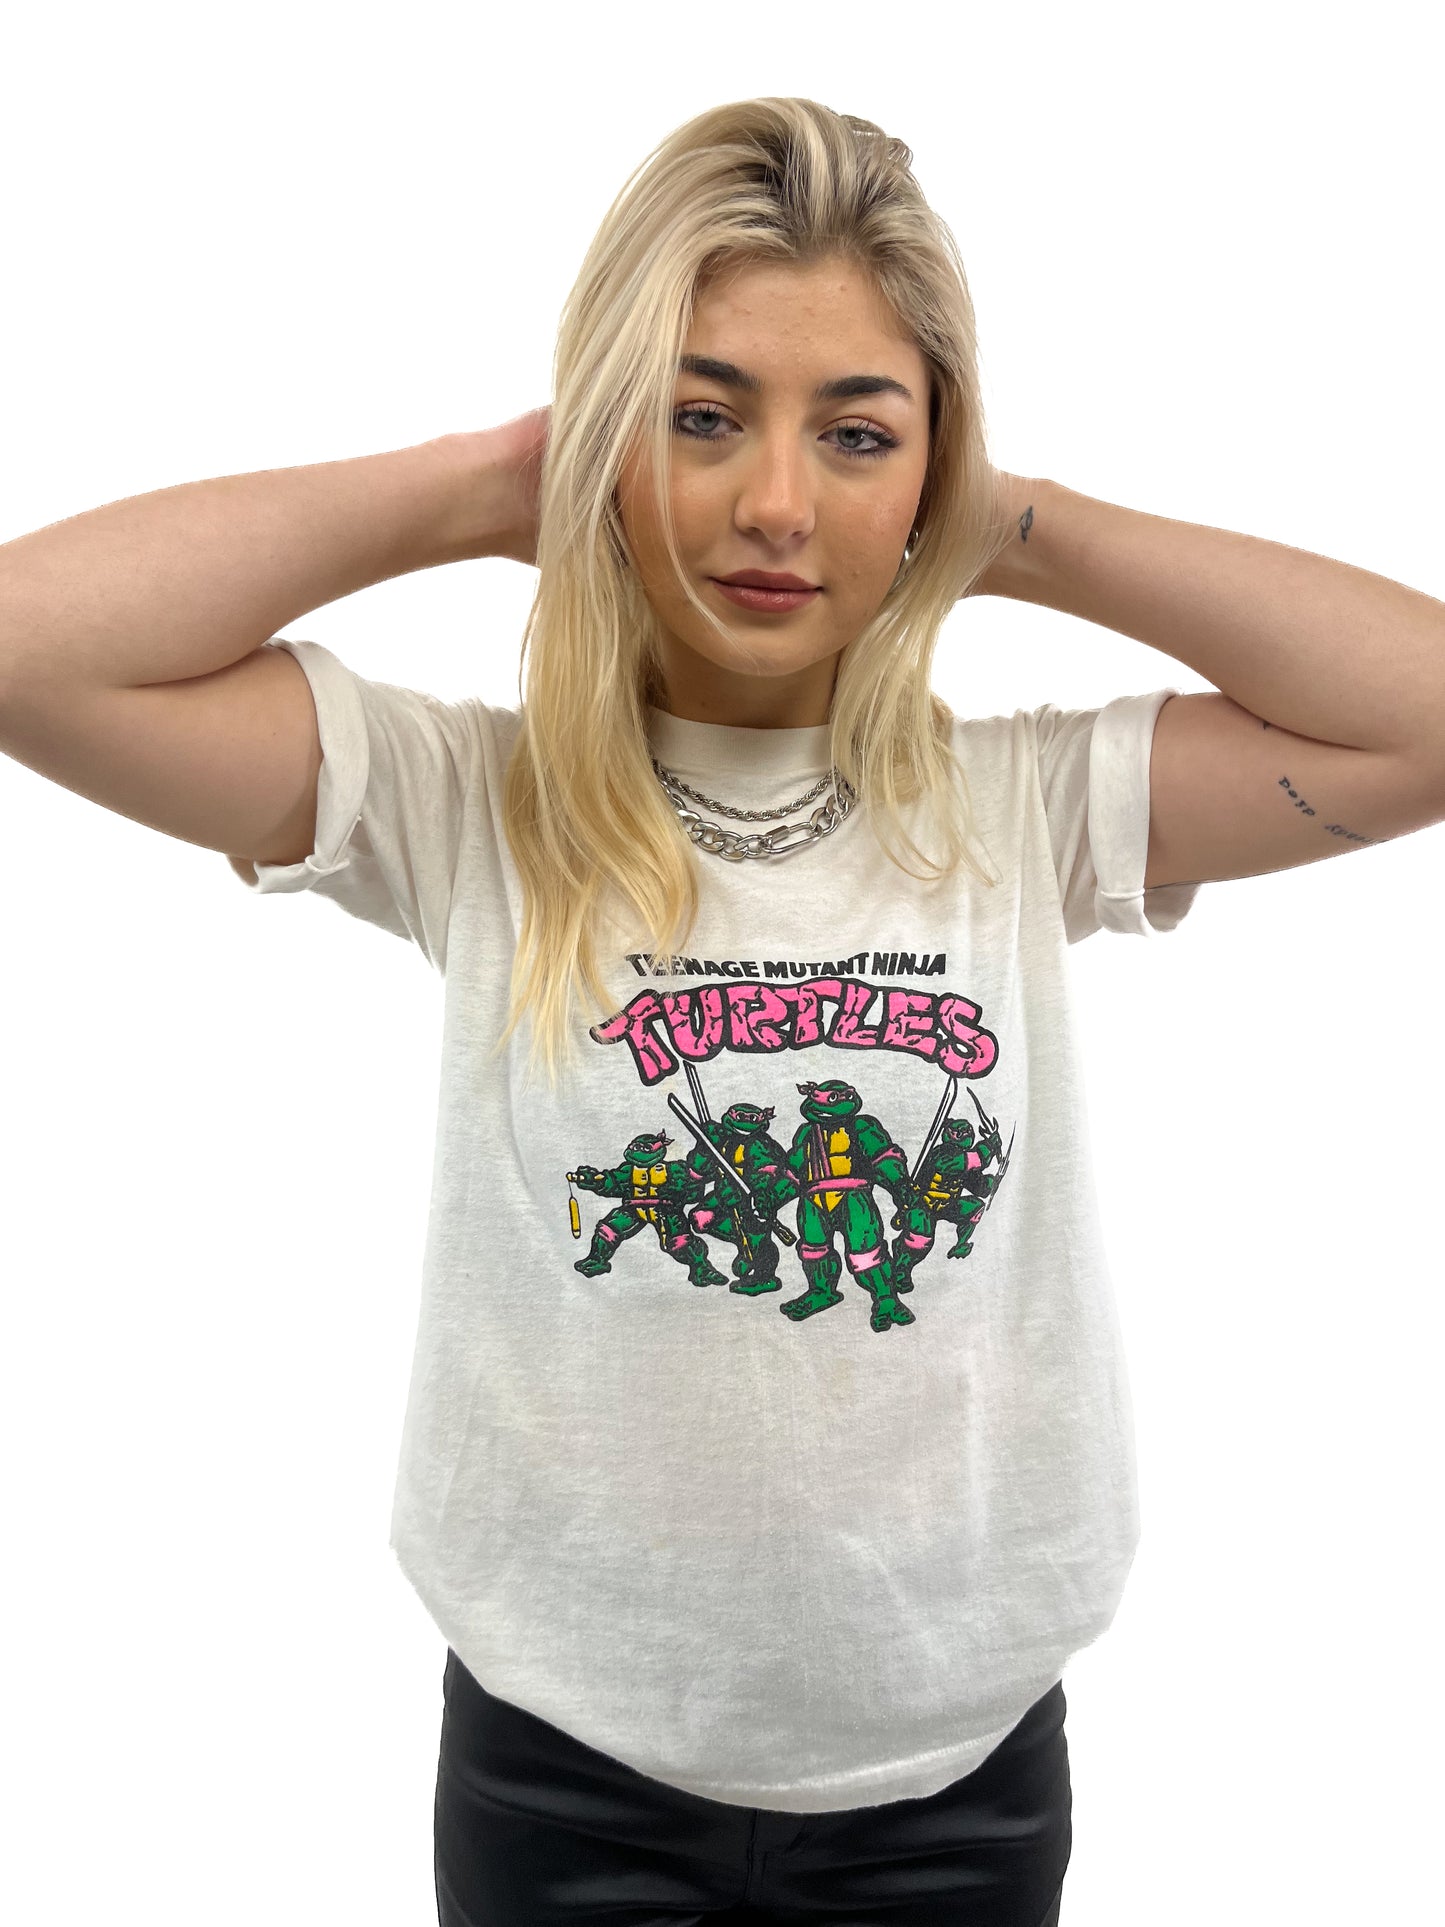 80s Teenage Mutant Ninja Turtles Tee